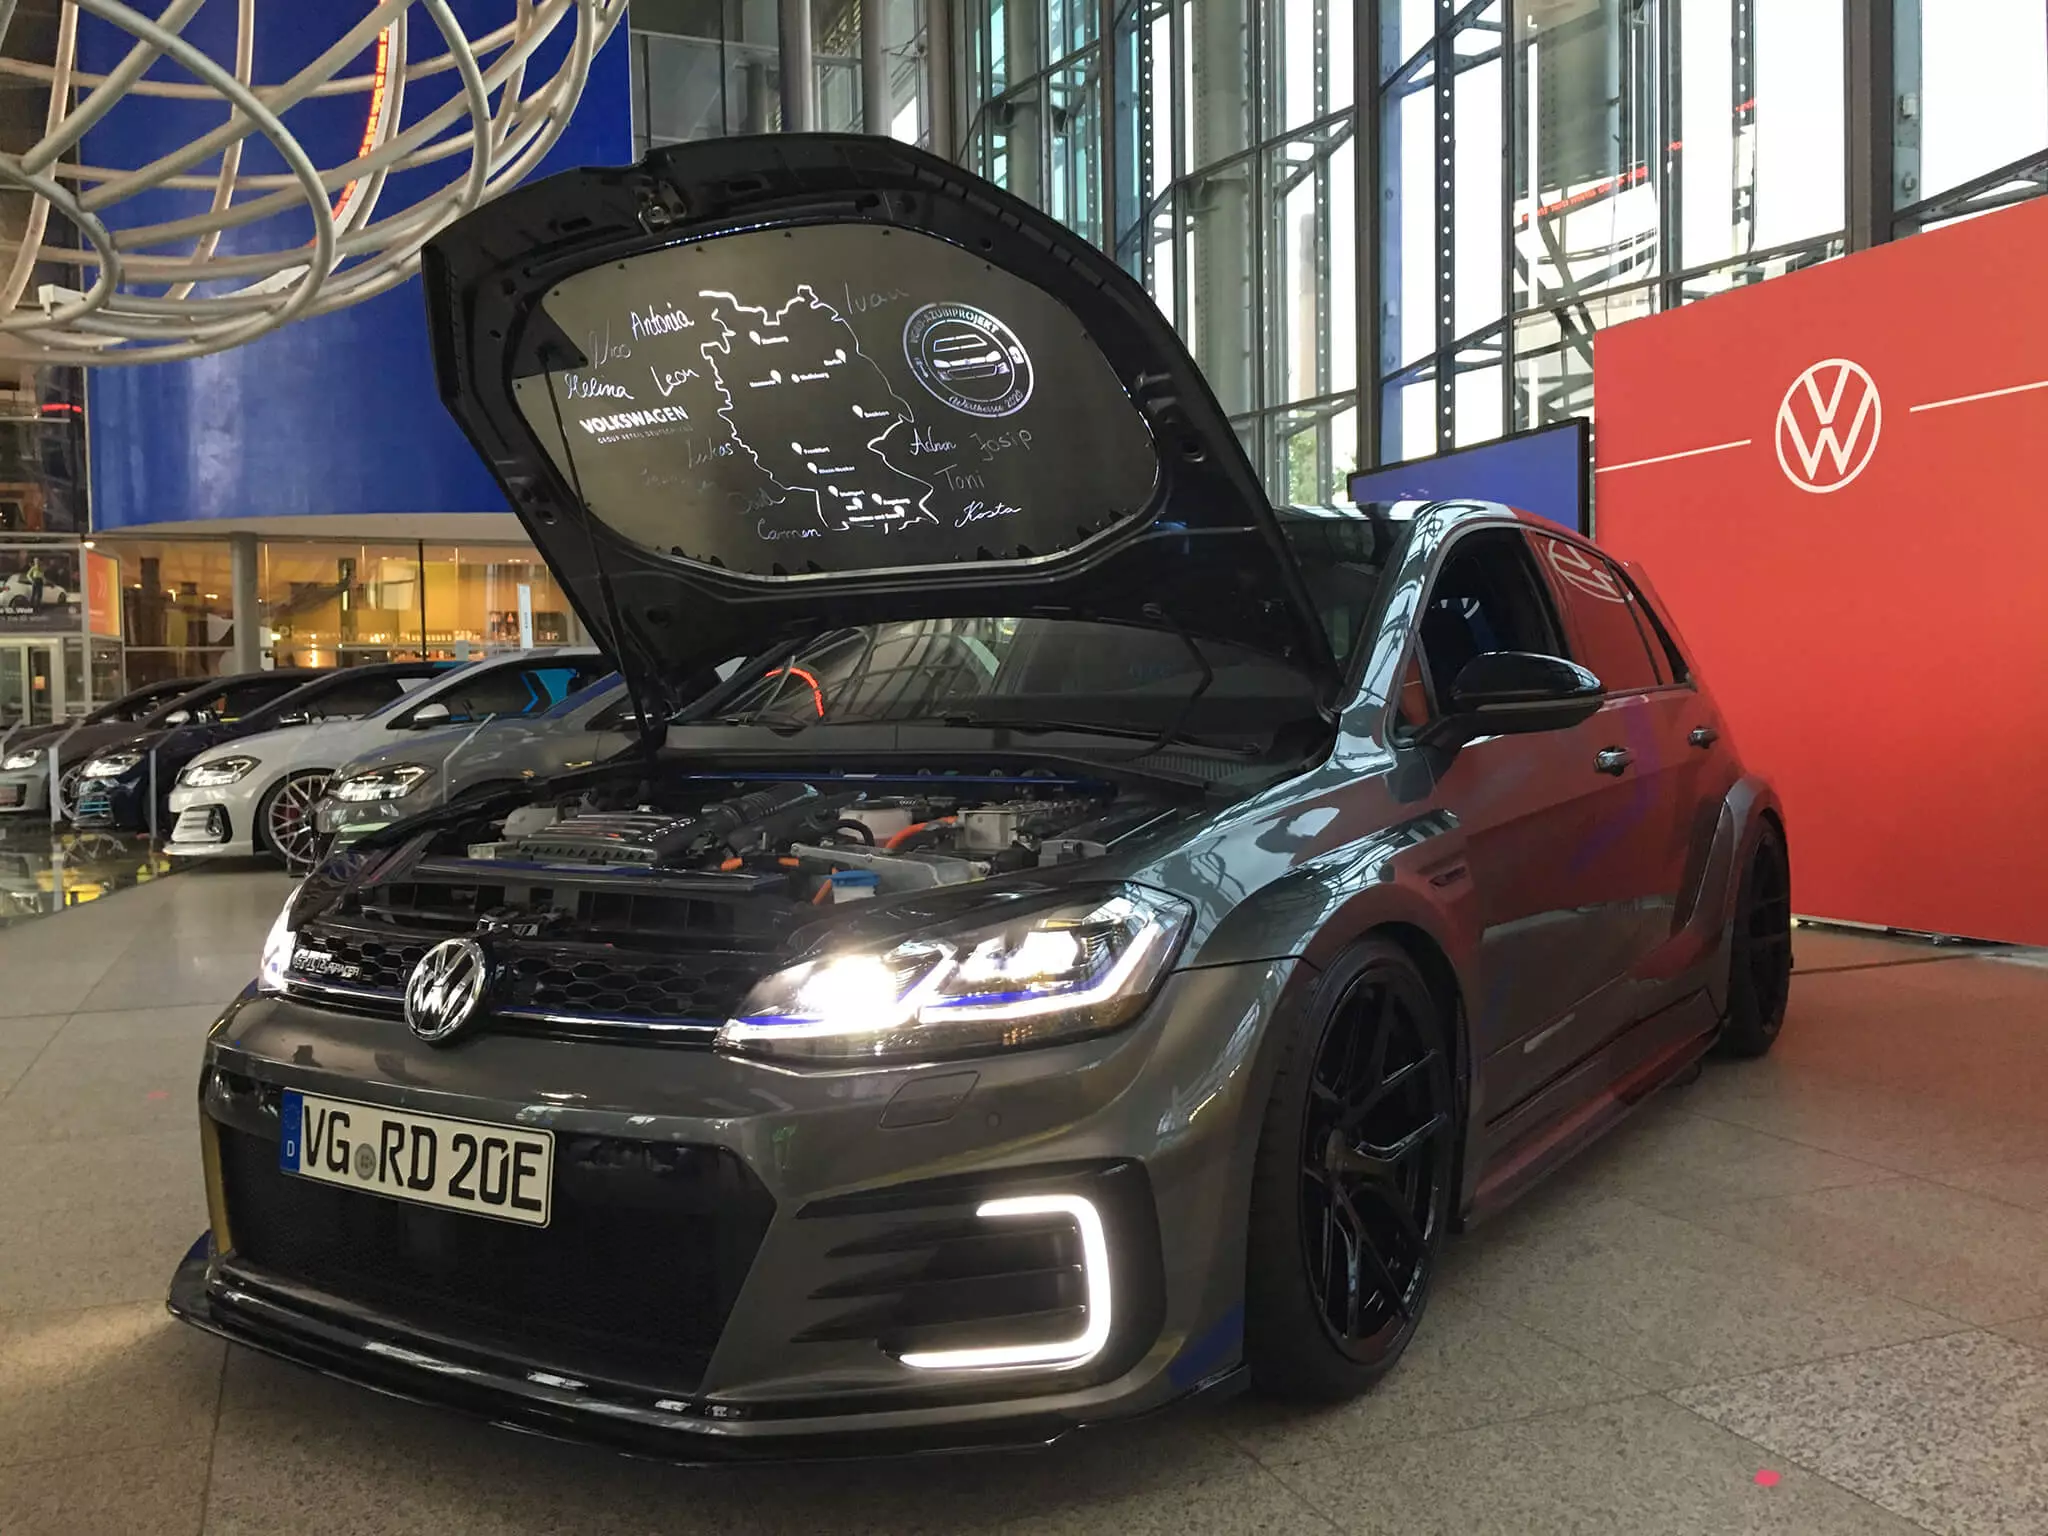 Volkswagen Golf GTE HyRacer 2020, Вертерзее